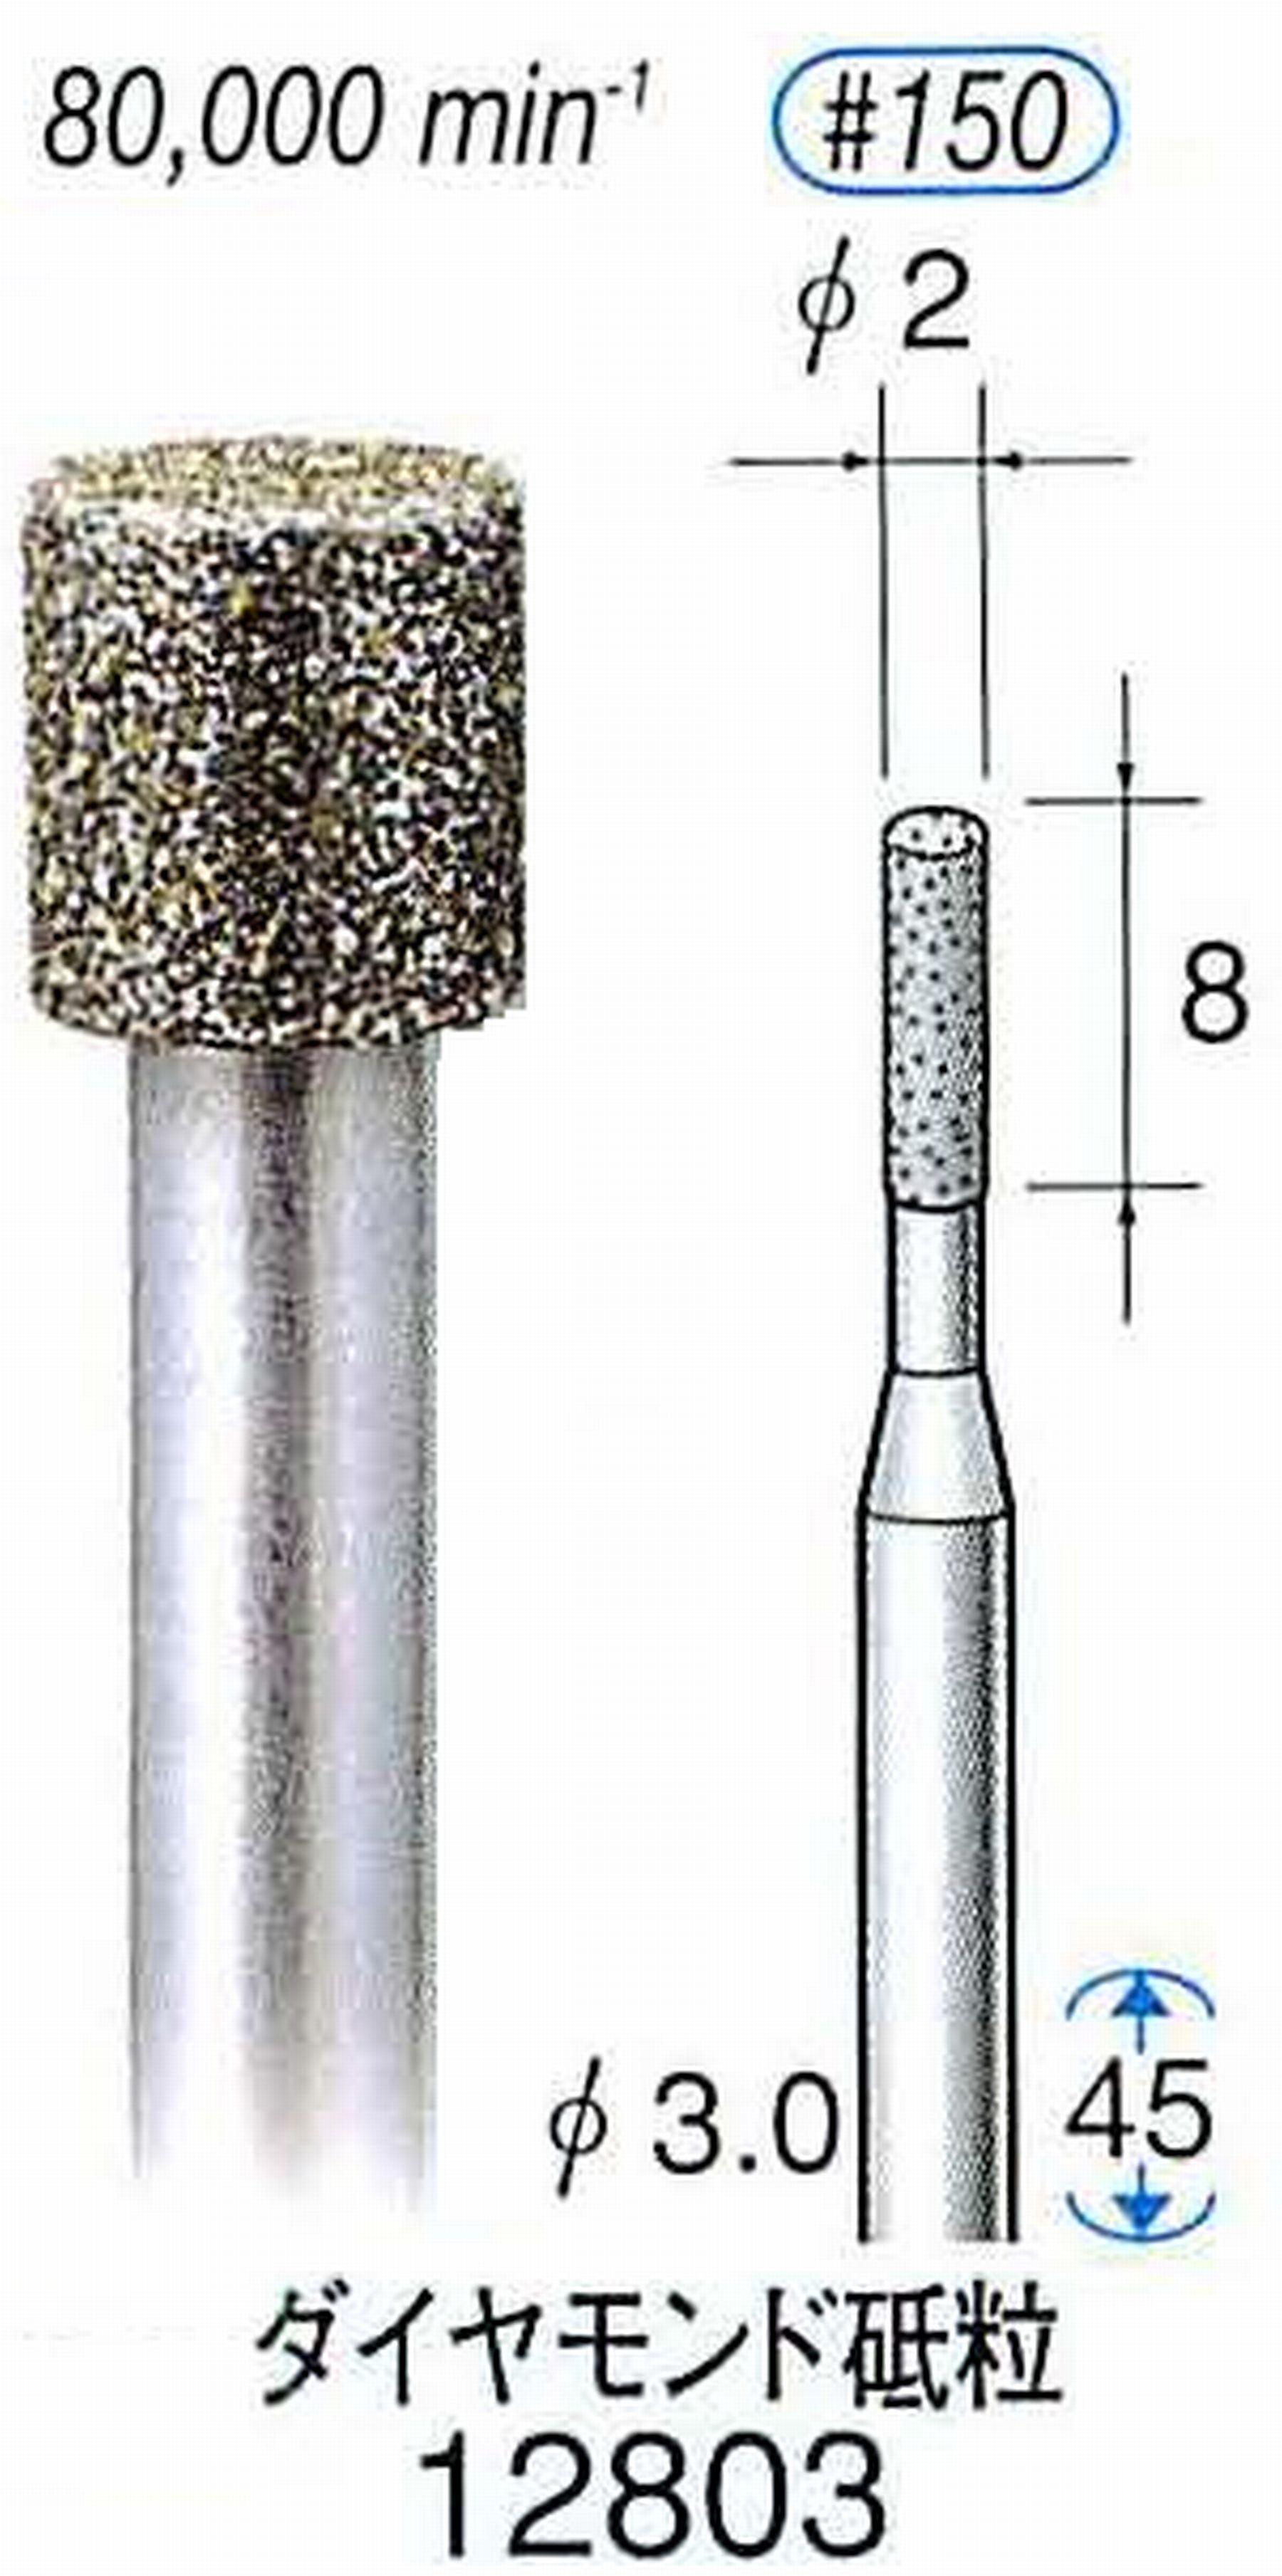 ナカニシ/NAKANISHI クラフト・ホビー用ダイヤモンドバー ダイヤモンド砥粒 軸径(シャンク)φ3.0mm 12803